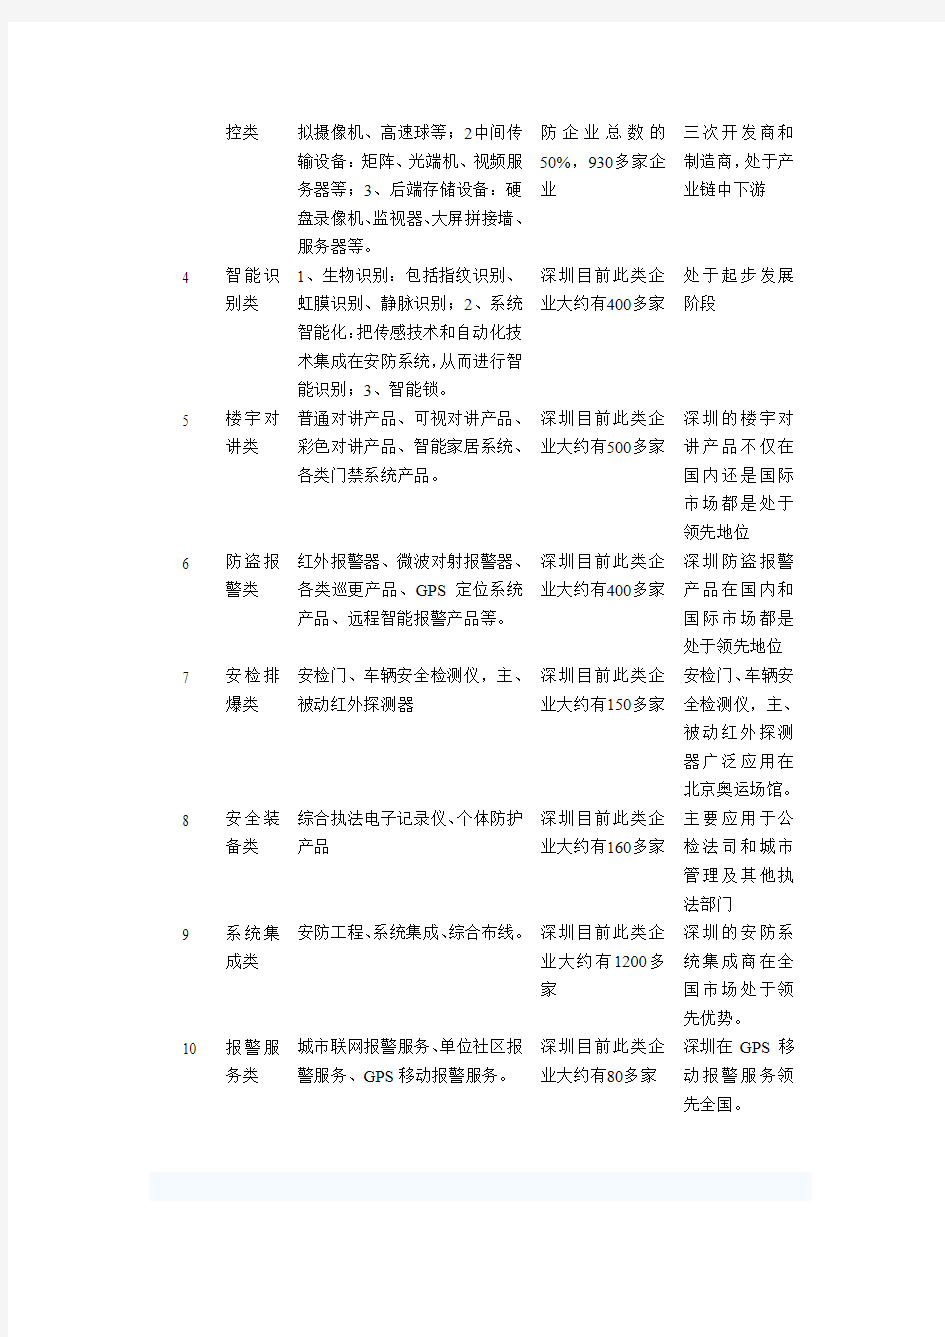 深圳安防产业发展现状分析报告